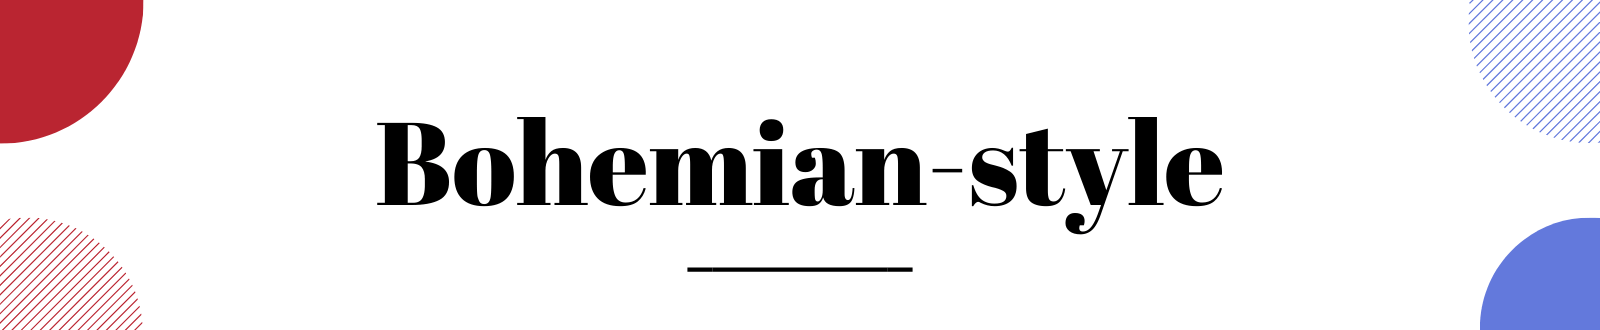 bohemian-style